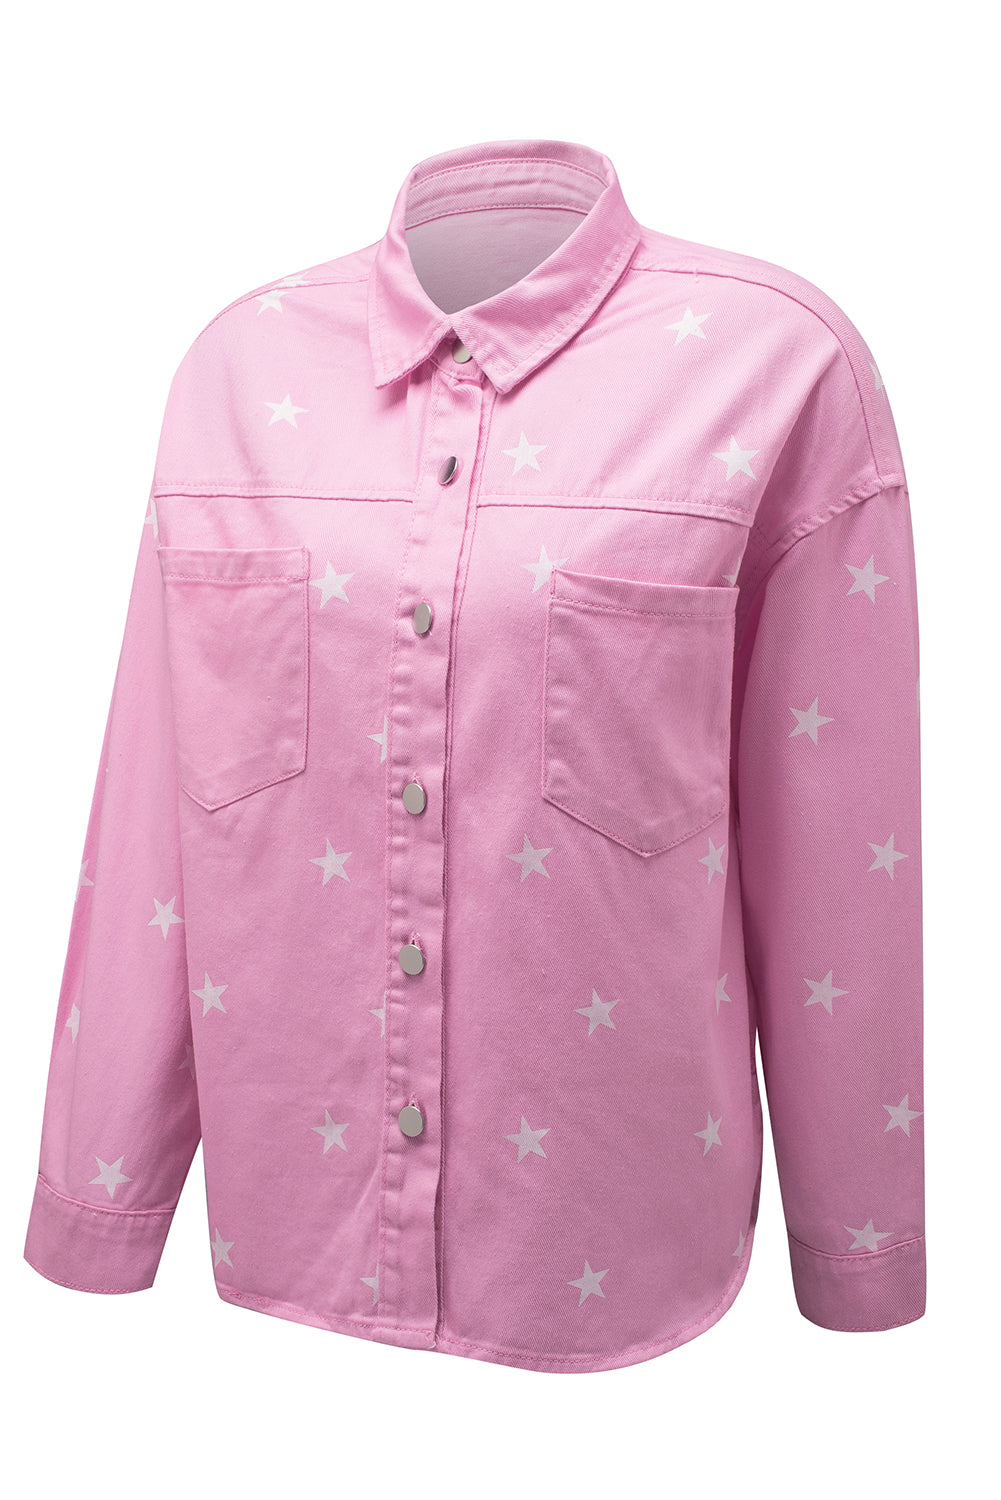 Pink Star Print Button Denim Jacket